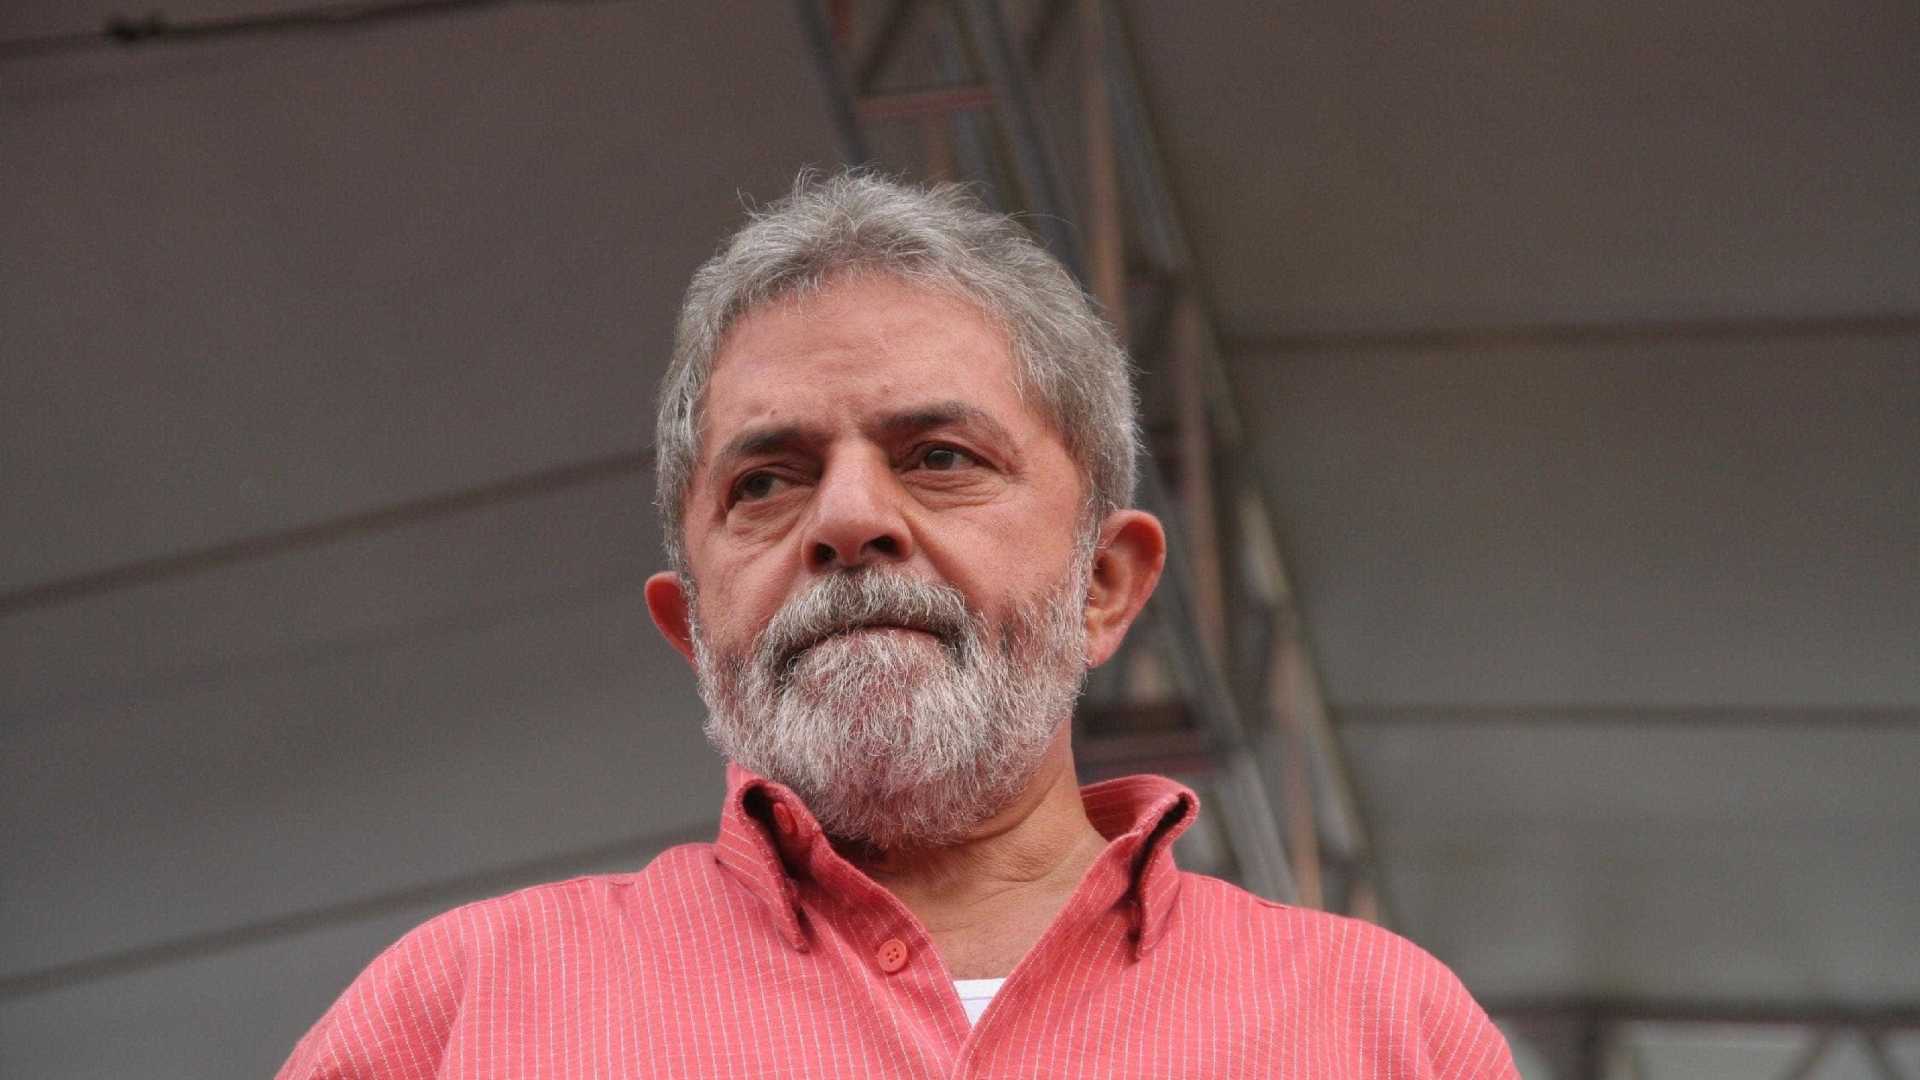 Desespero não pode levar o Brasil a aventura fascista, diz Lula